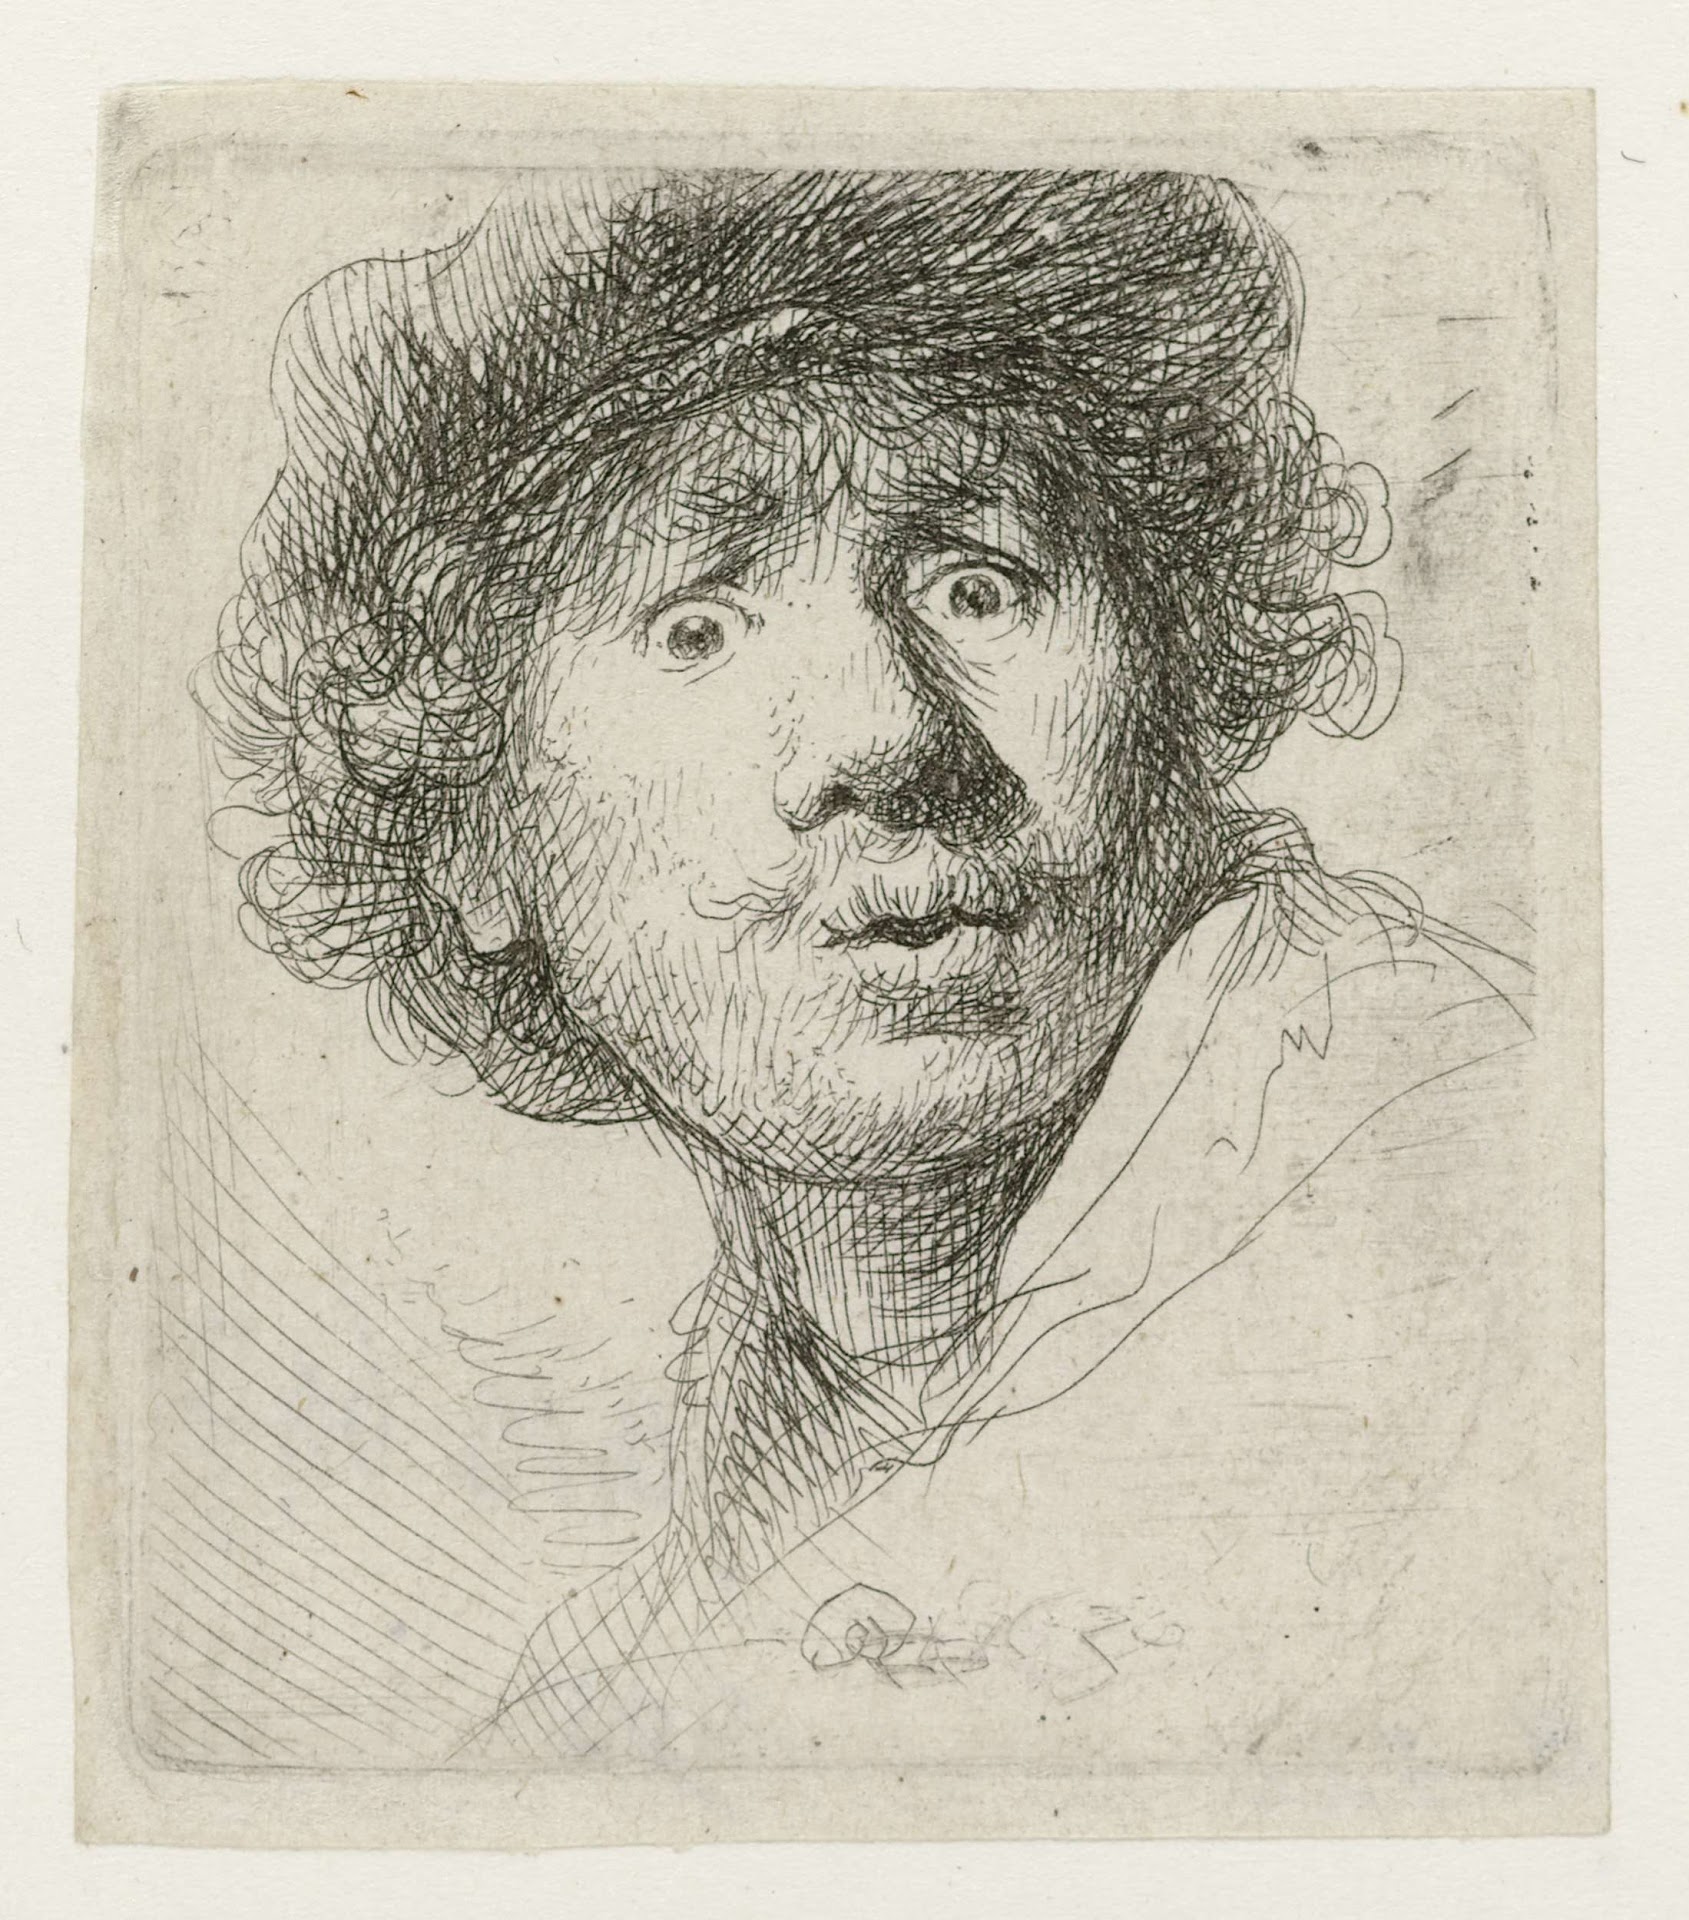 Self-Portrait with Wide-Open Eyes by Rembrandt van Rijn - 1630 - 51 x 46mm Rijksmuseum